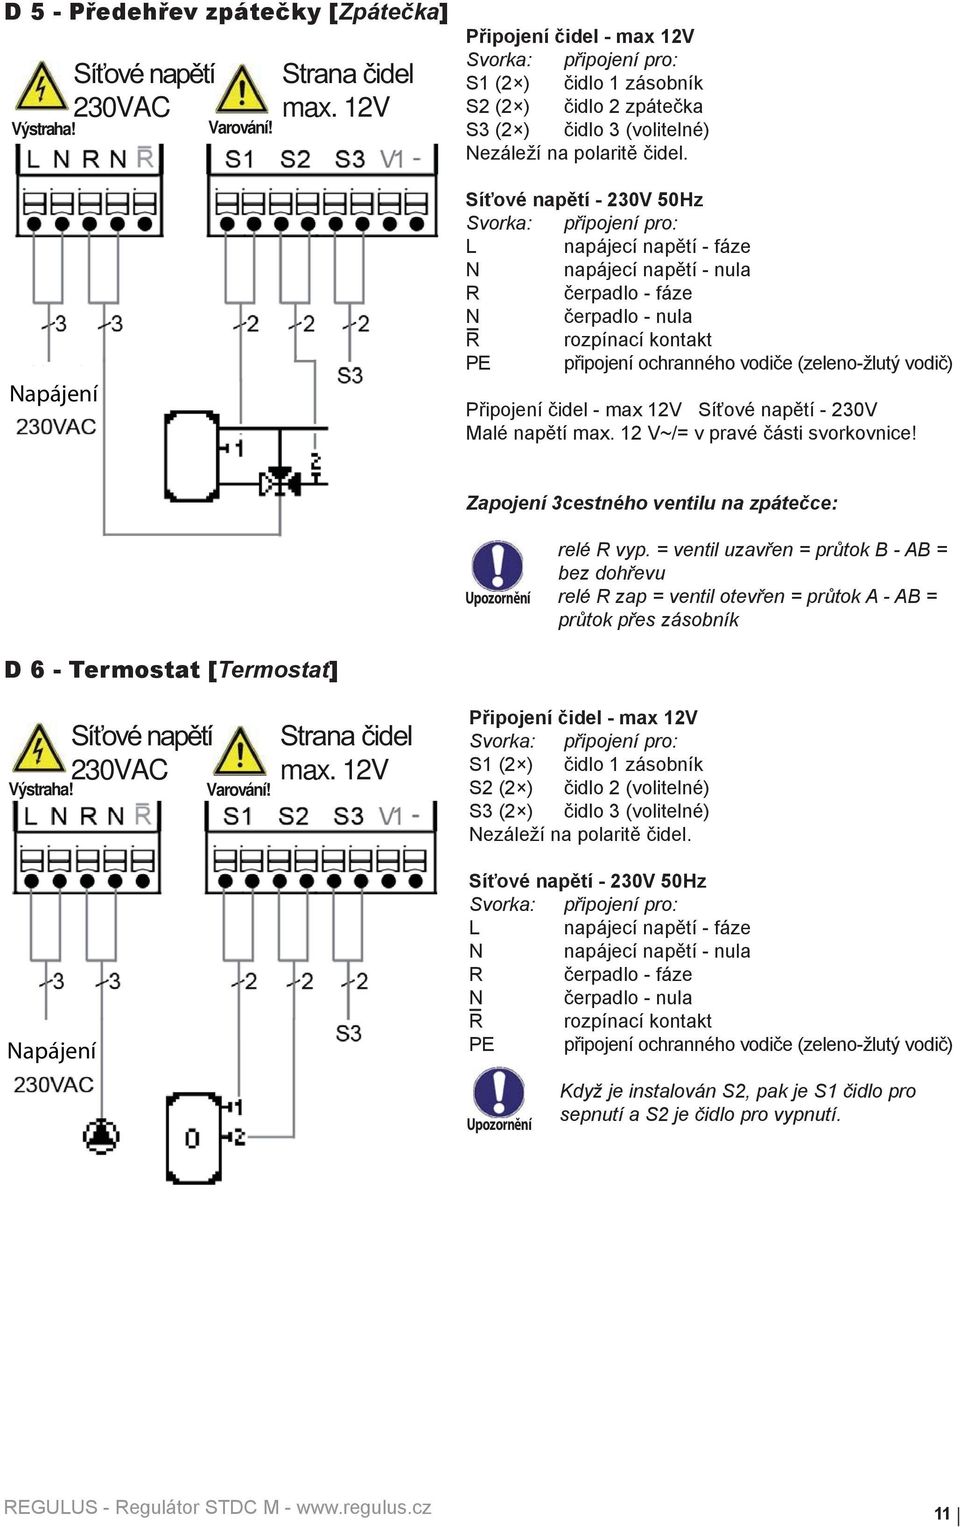 Síťové napětí - 230V 50Hz L napájecí napětí - fáze N napájecí napětí - nula R čerpadlo - fáze N čerpadlo - nula R rozpínací kontakt PE připojení ochranného vodiče (zeleno-žlutý vodič) Připojení čidel